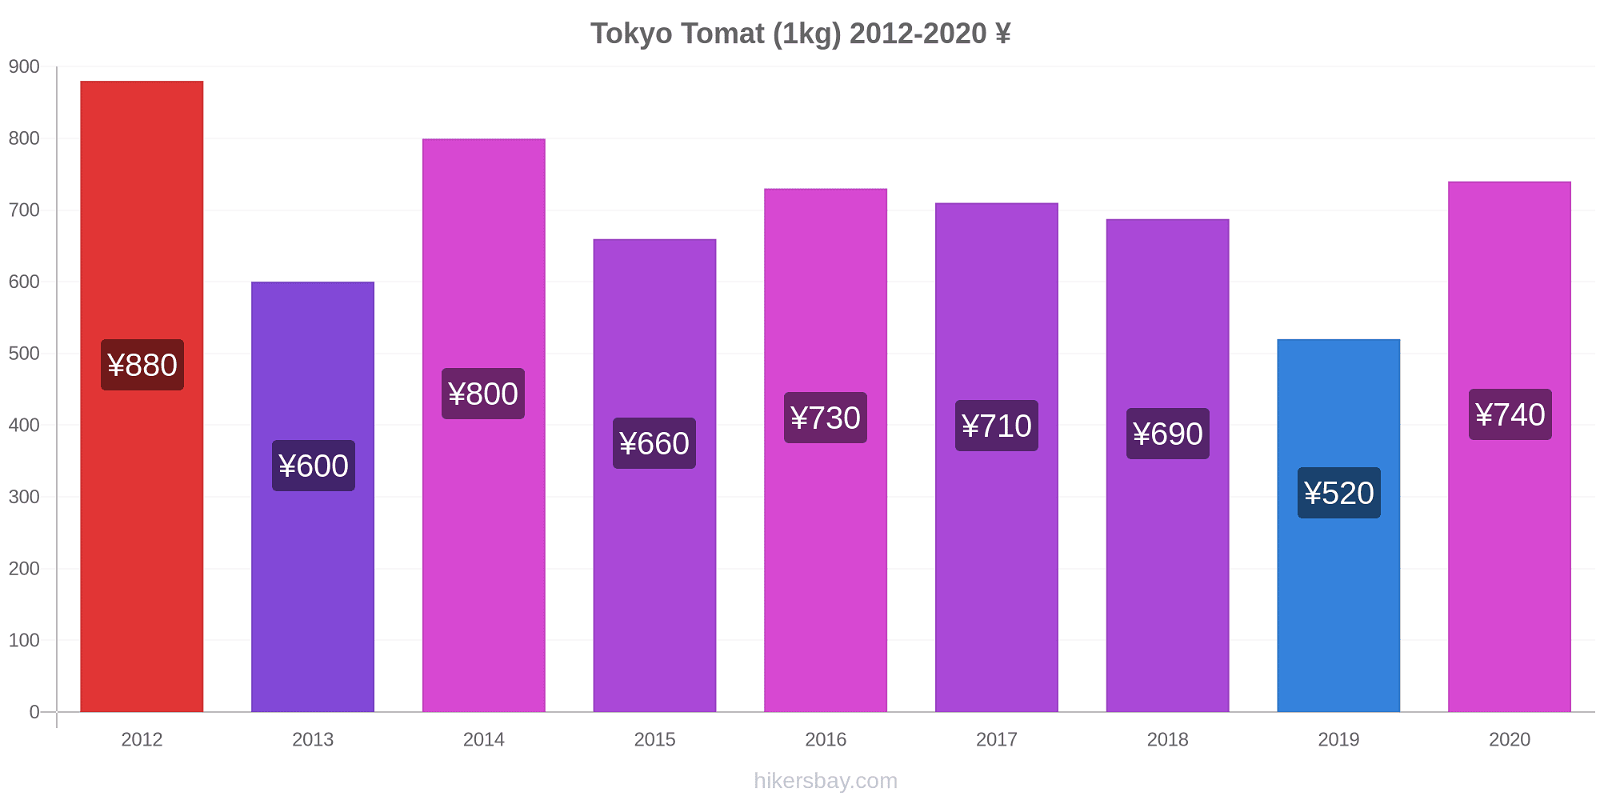 Tokyo perubahan harga Tomat (1kg) hikersbay.com